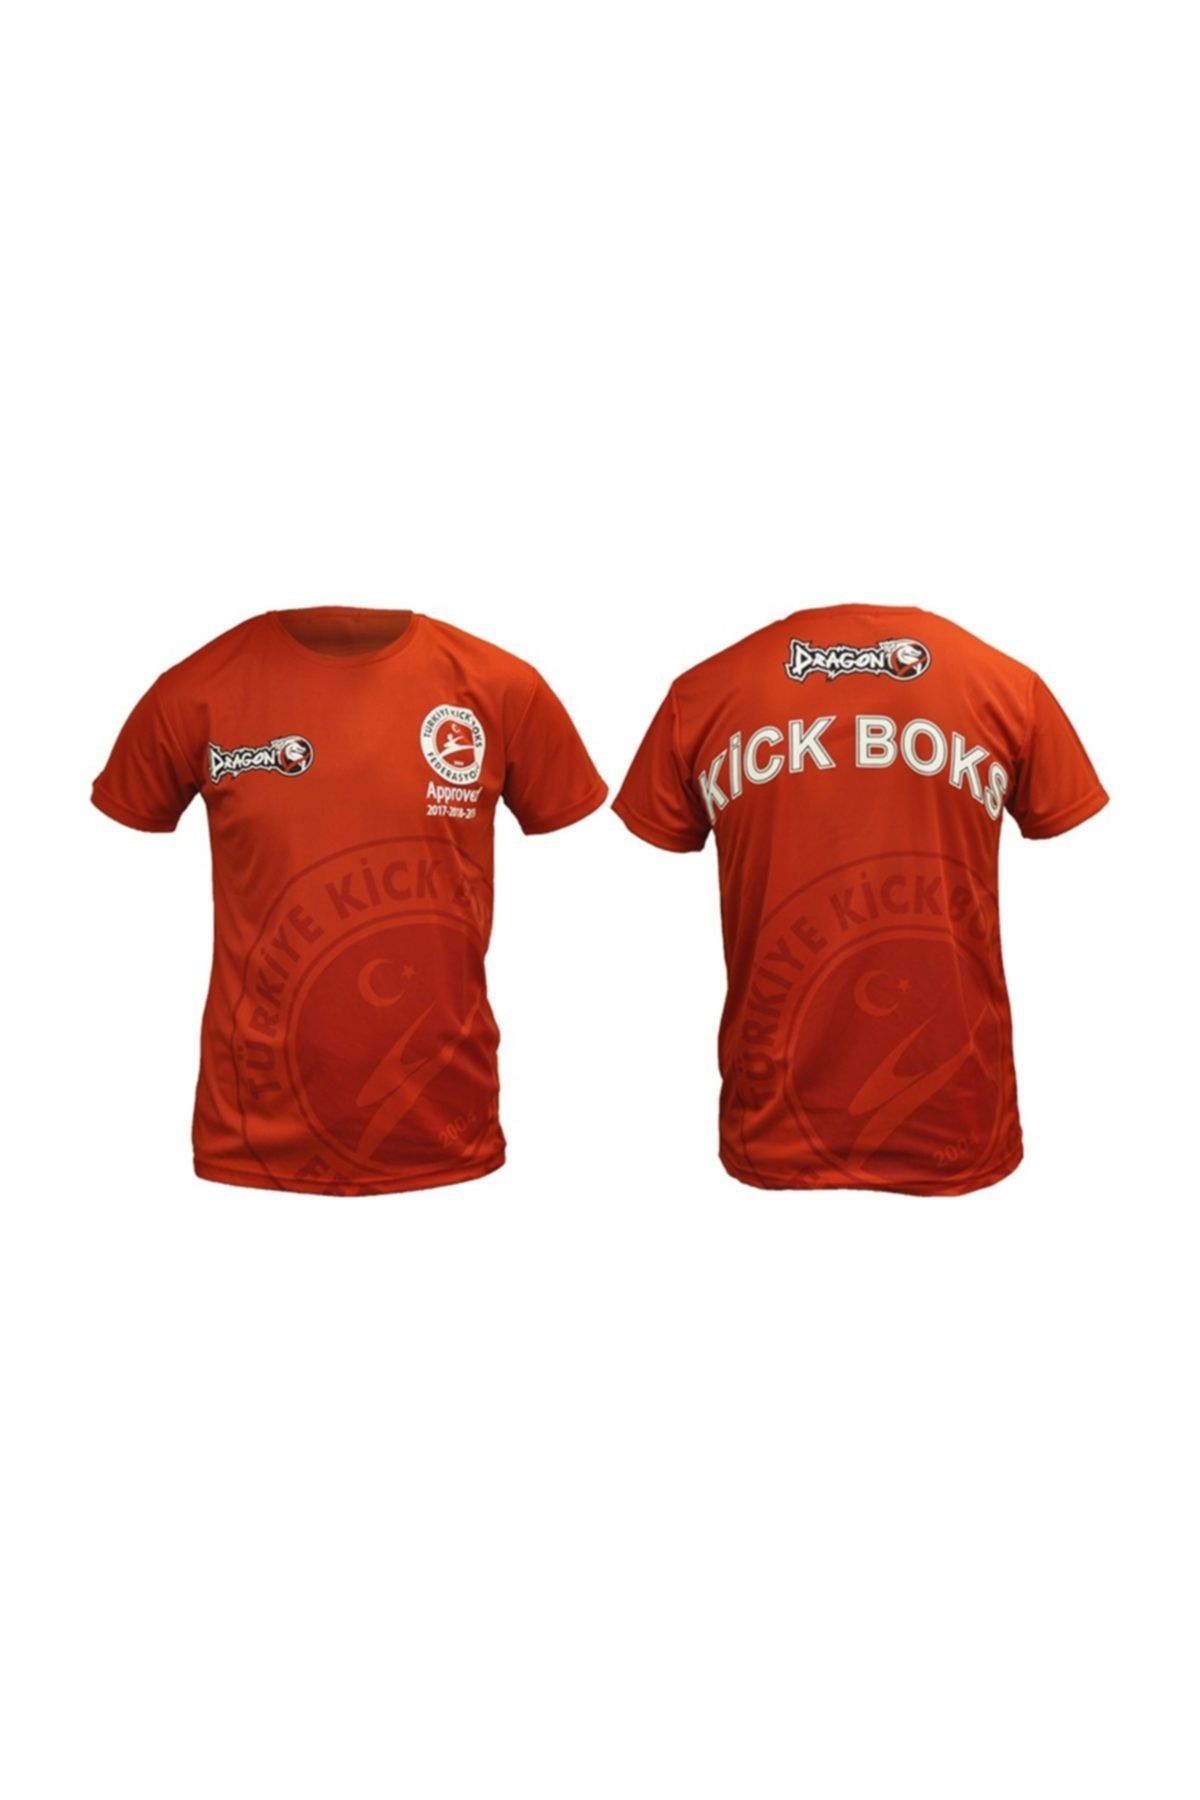 Dragondo Kf2018 Kick Boks Tişörtü Kırmızı